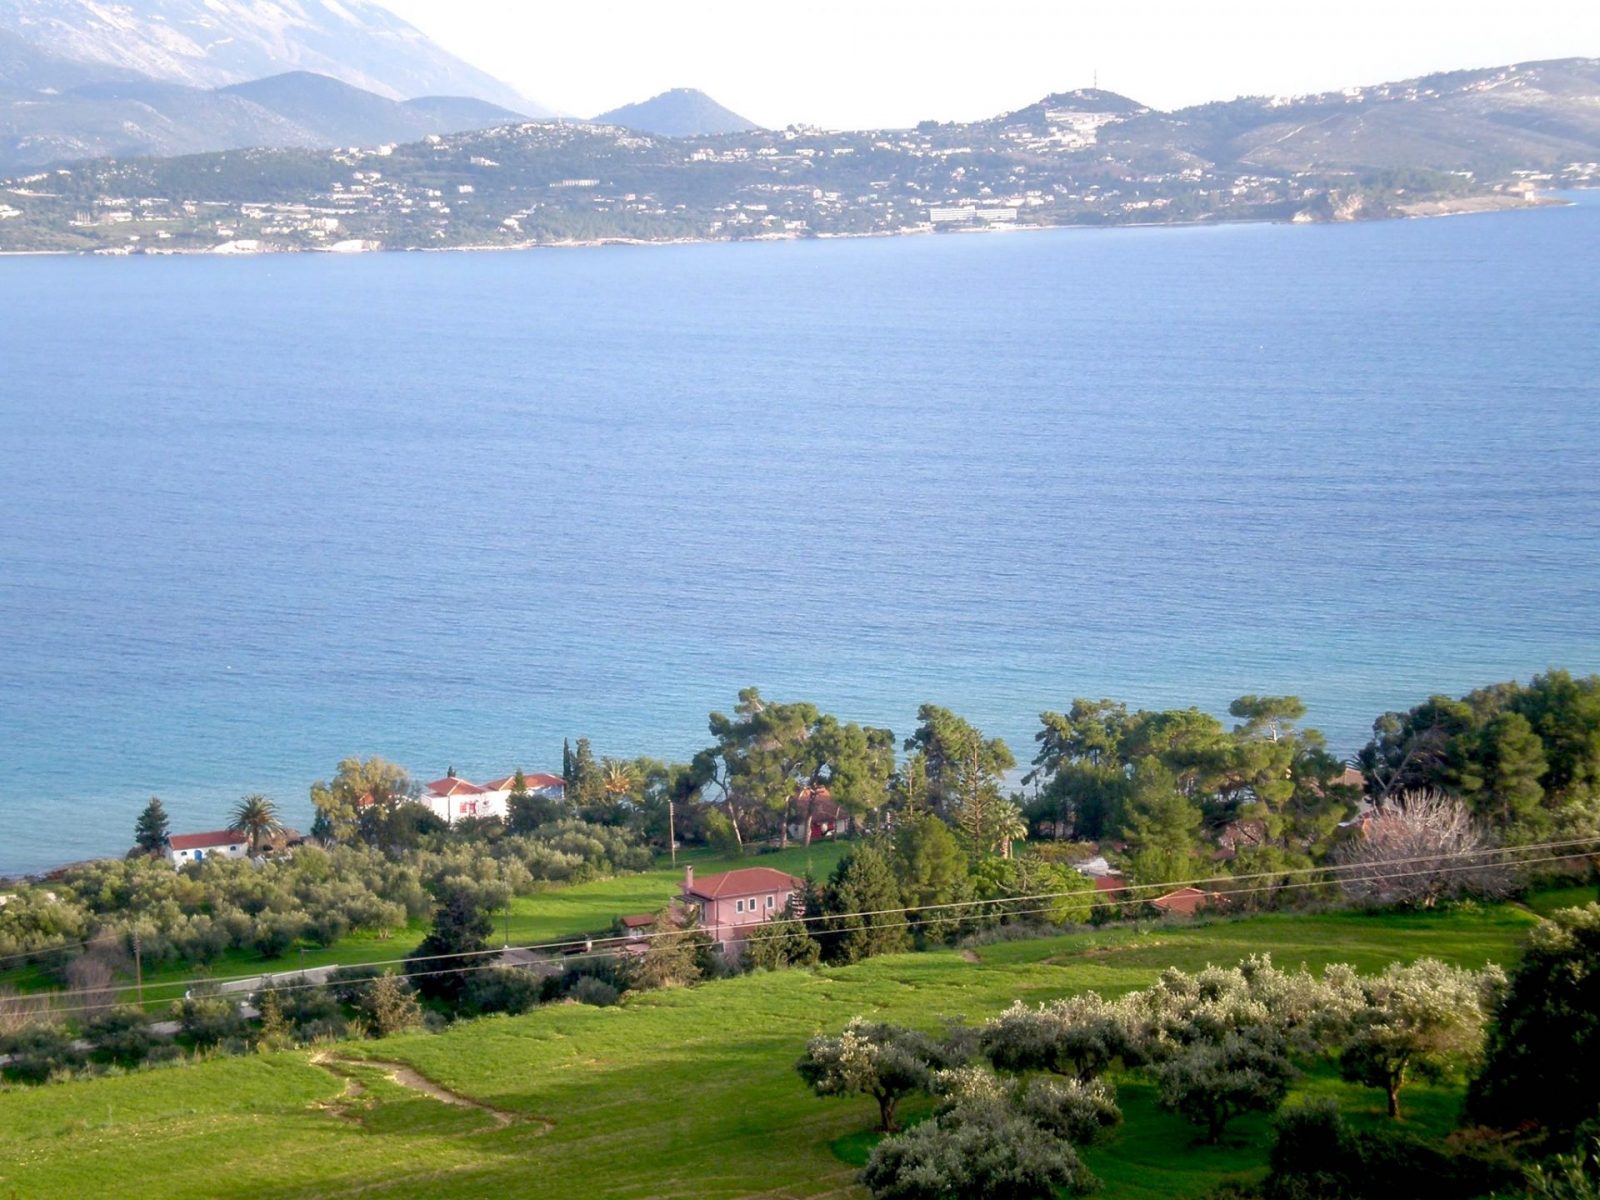 Παραλίες-όνειρο, μείωση τιμών:  Γιατί το Ληξούρι είναι ο νούμερο ένα Covid-free προορισμός στην Ελλάδα  για φέτος το καλοκαίρι